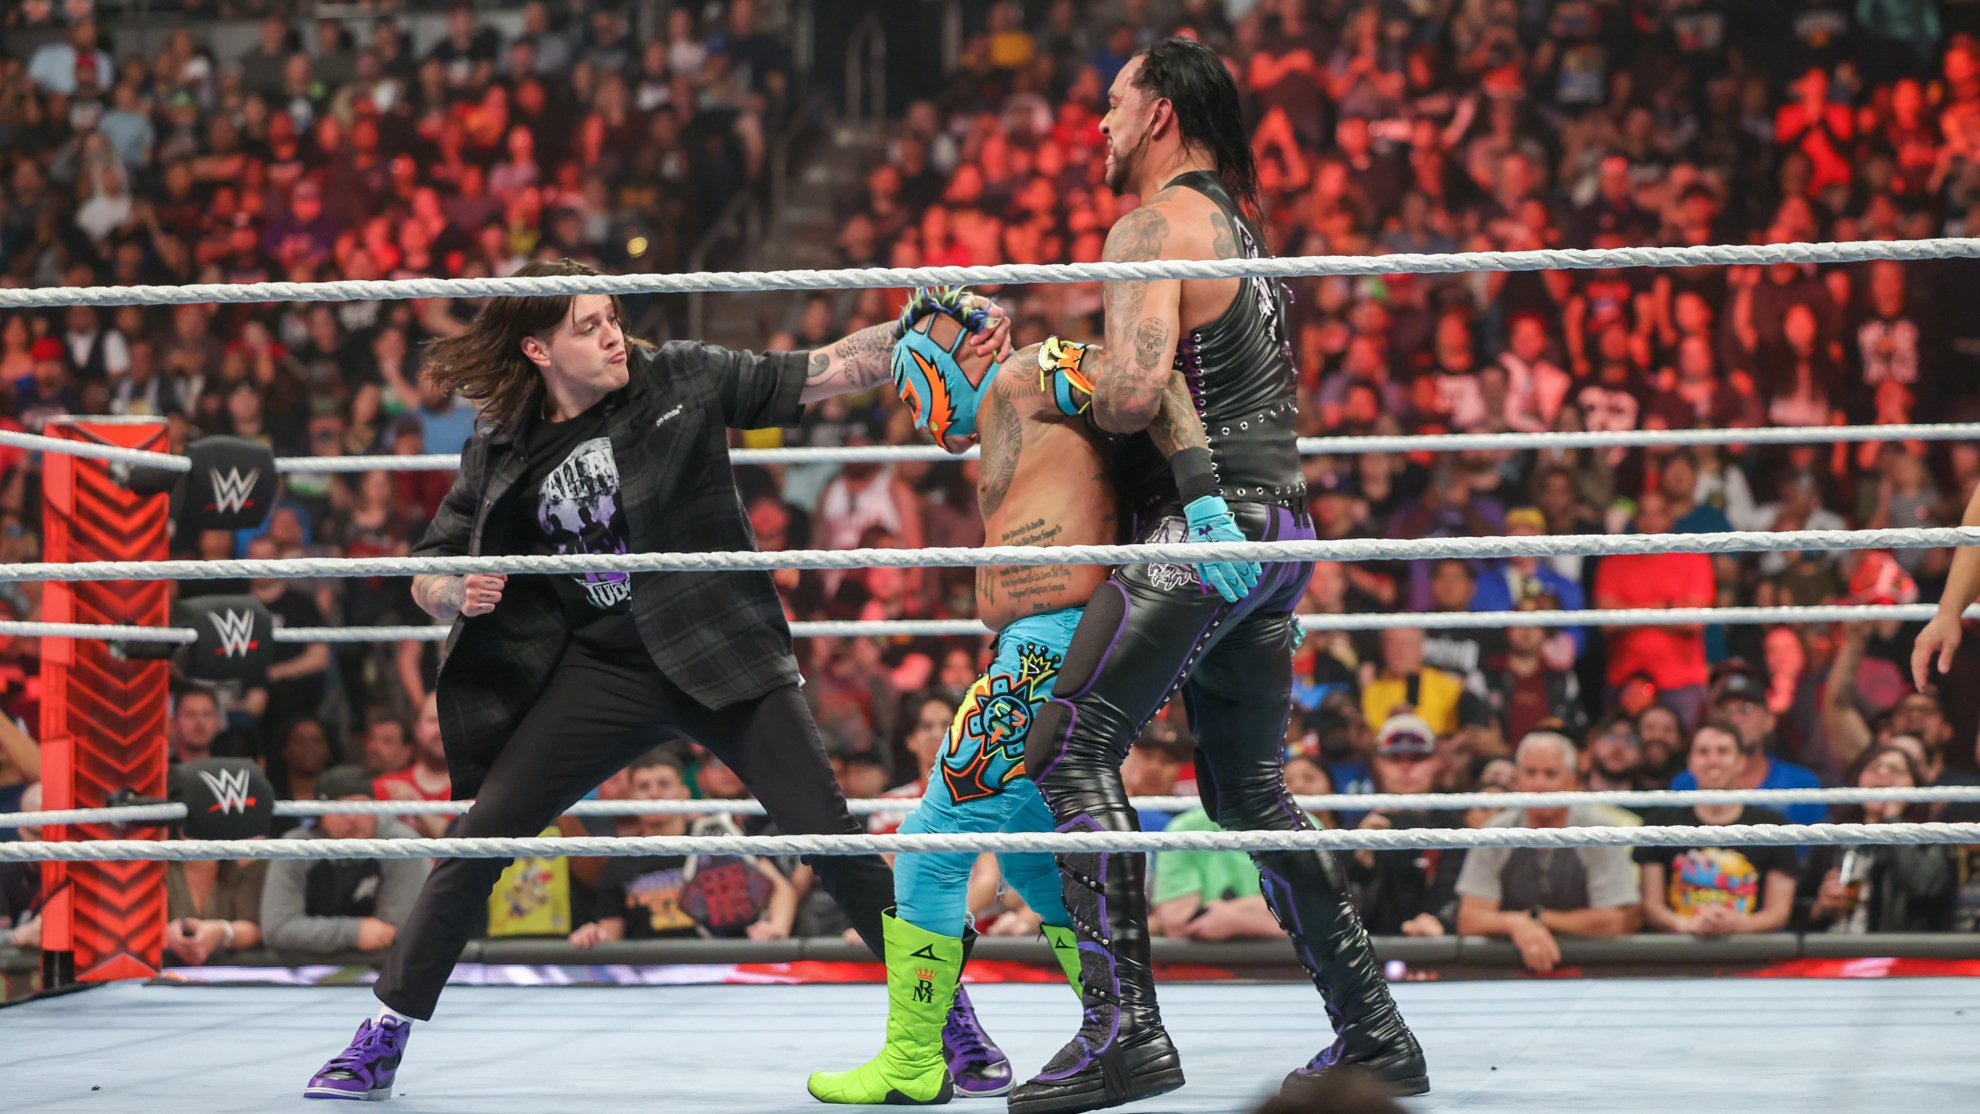 Dominik e Damian Priest atacando Rey Mysterio - WWE Raw 27 03 23